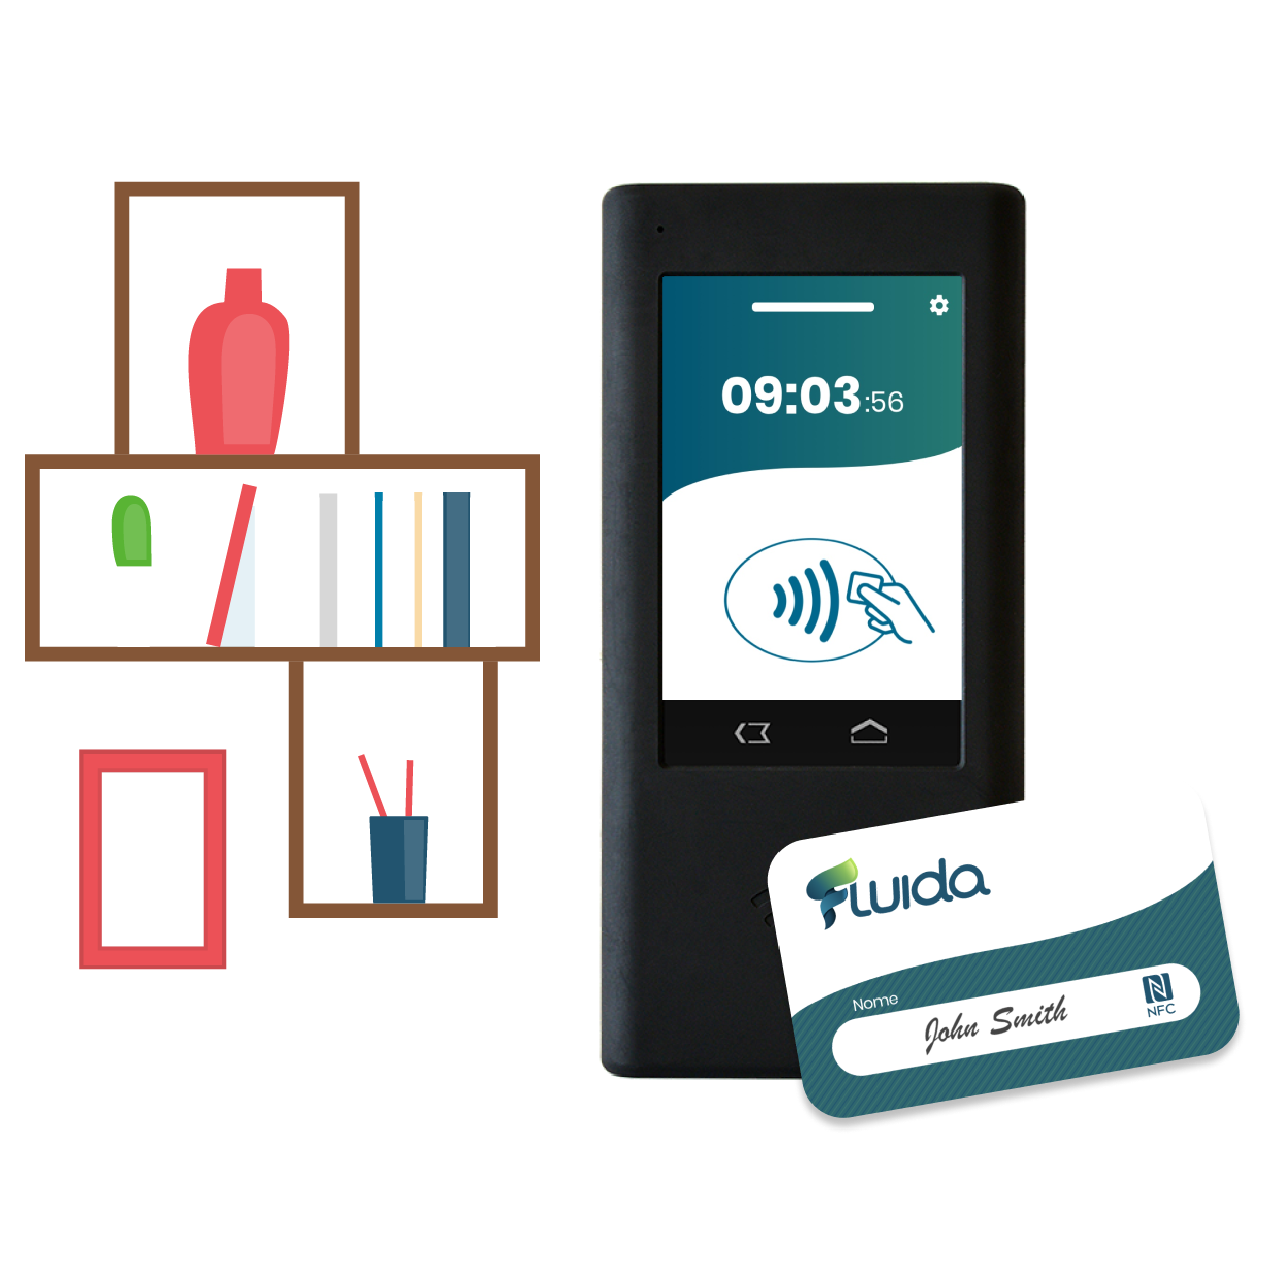 Fluida Station Machine d’estampage avec détecteur de présence Bluetooth et lecteur de badge NFC intégré